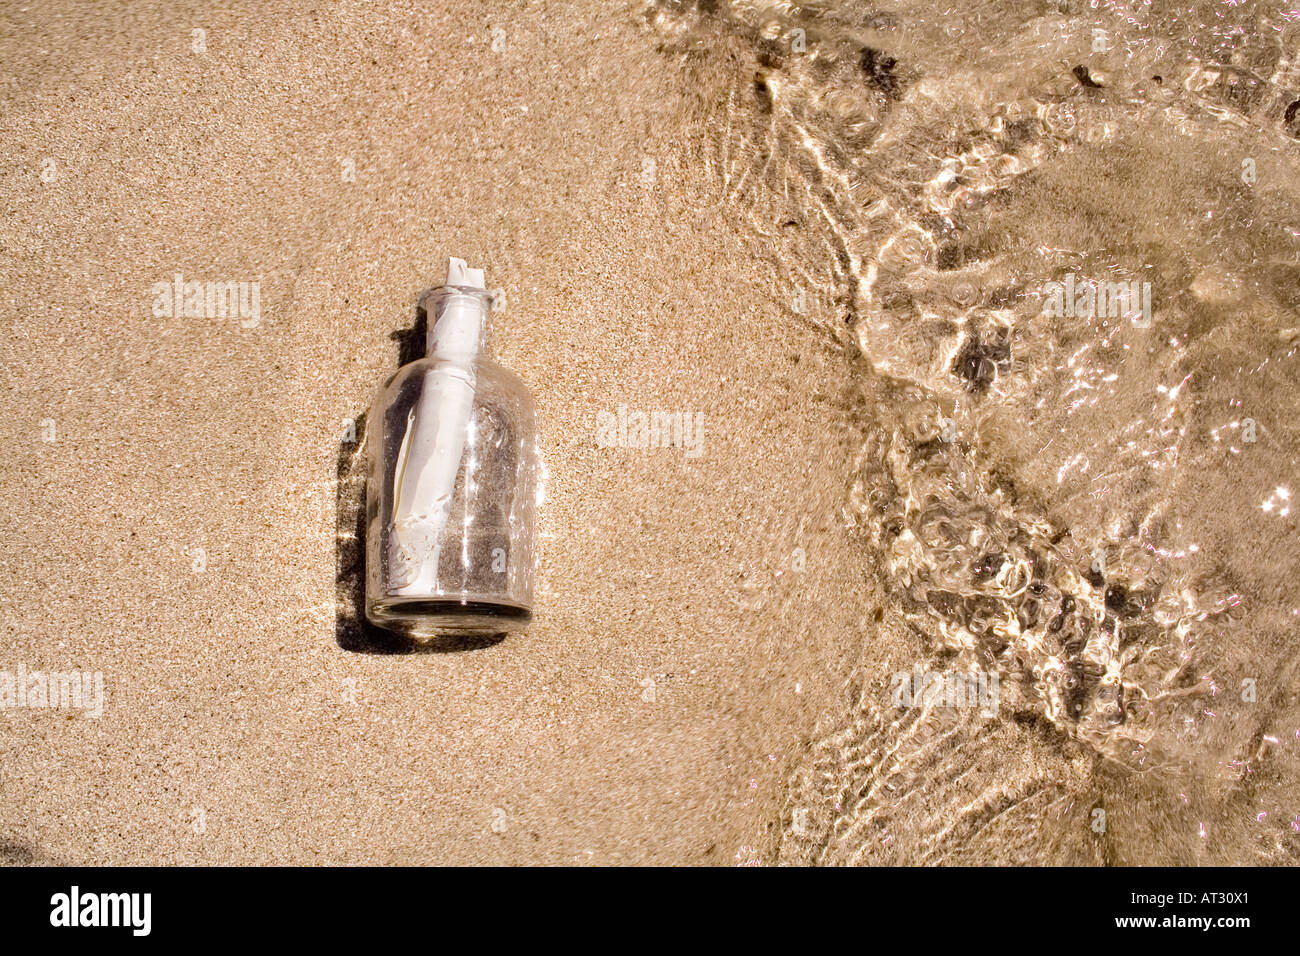 Message en bouteille échoués sur la plage Banque D'Images